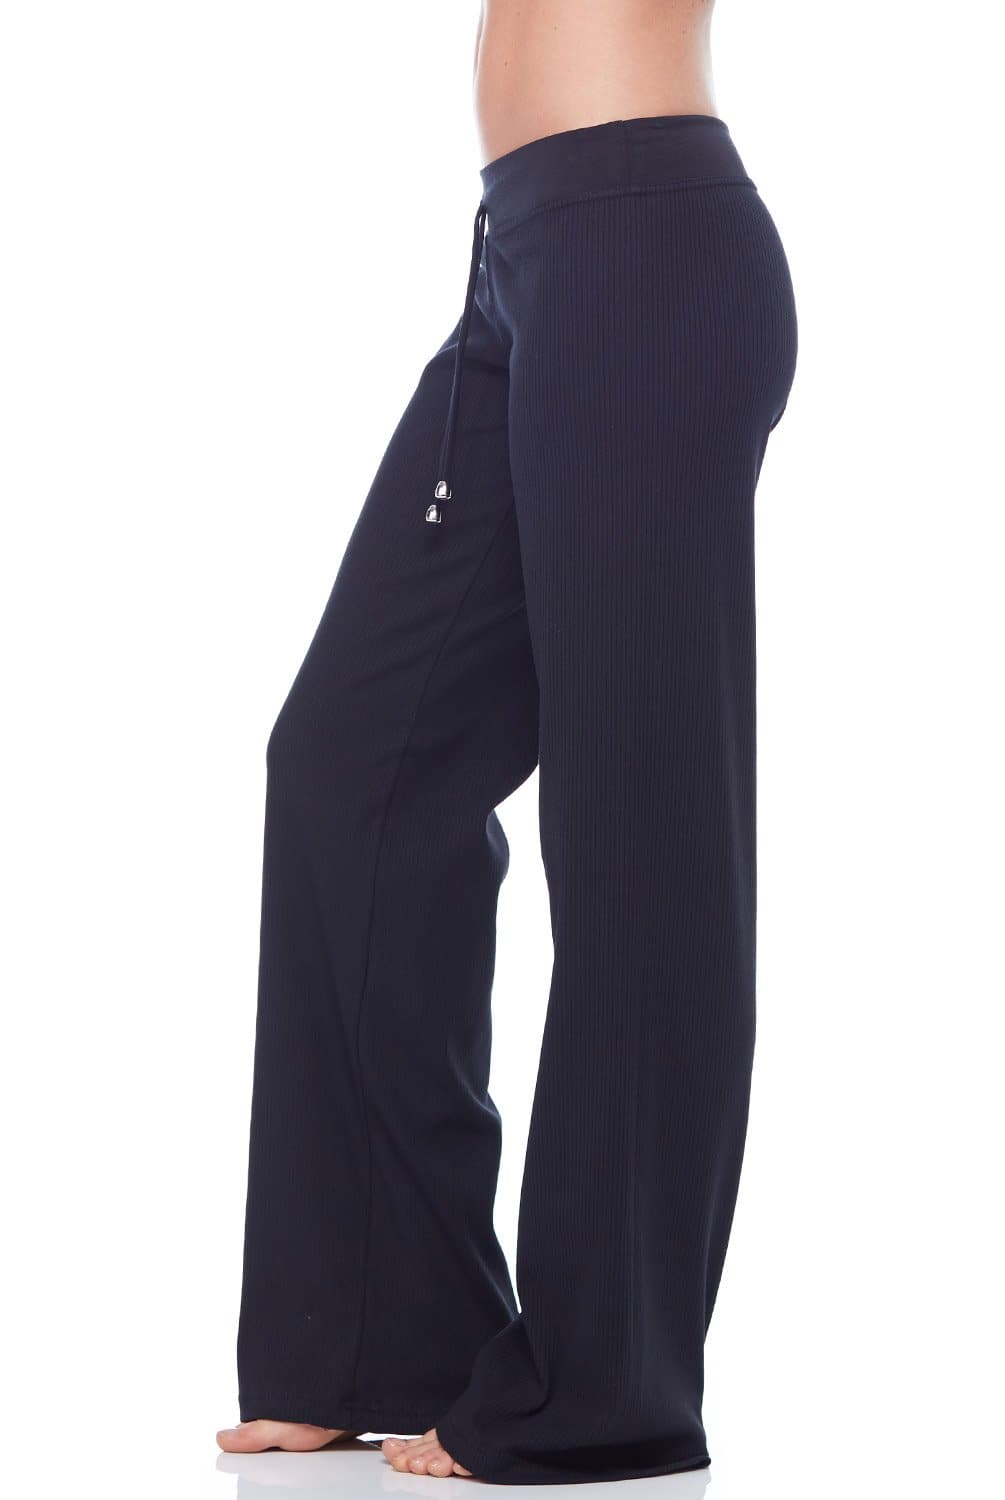 Parasuco Pants Womens Medium Chino Black Stretch Rayon Nylon Preppy Ladies  29x30